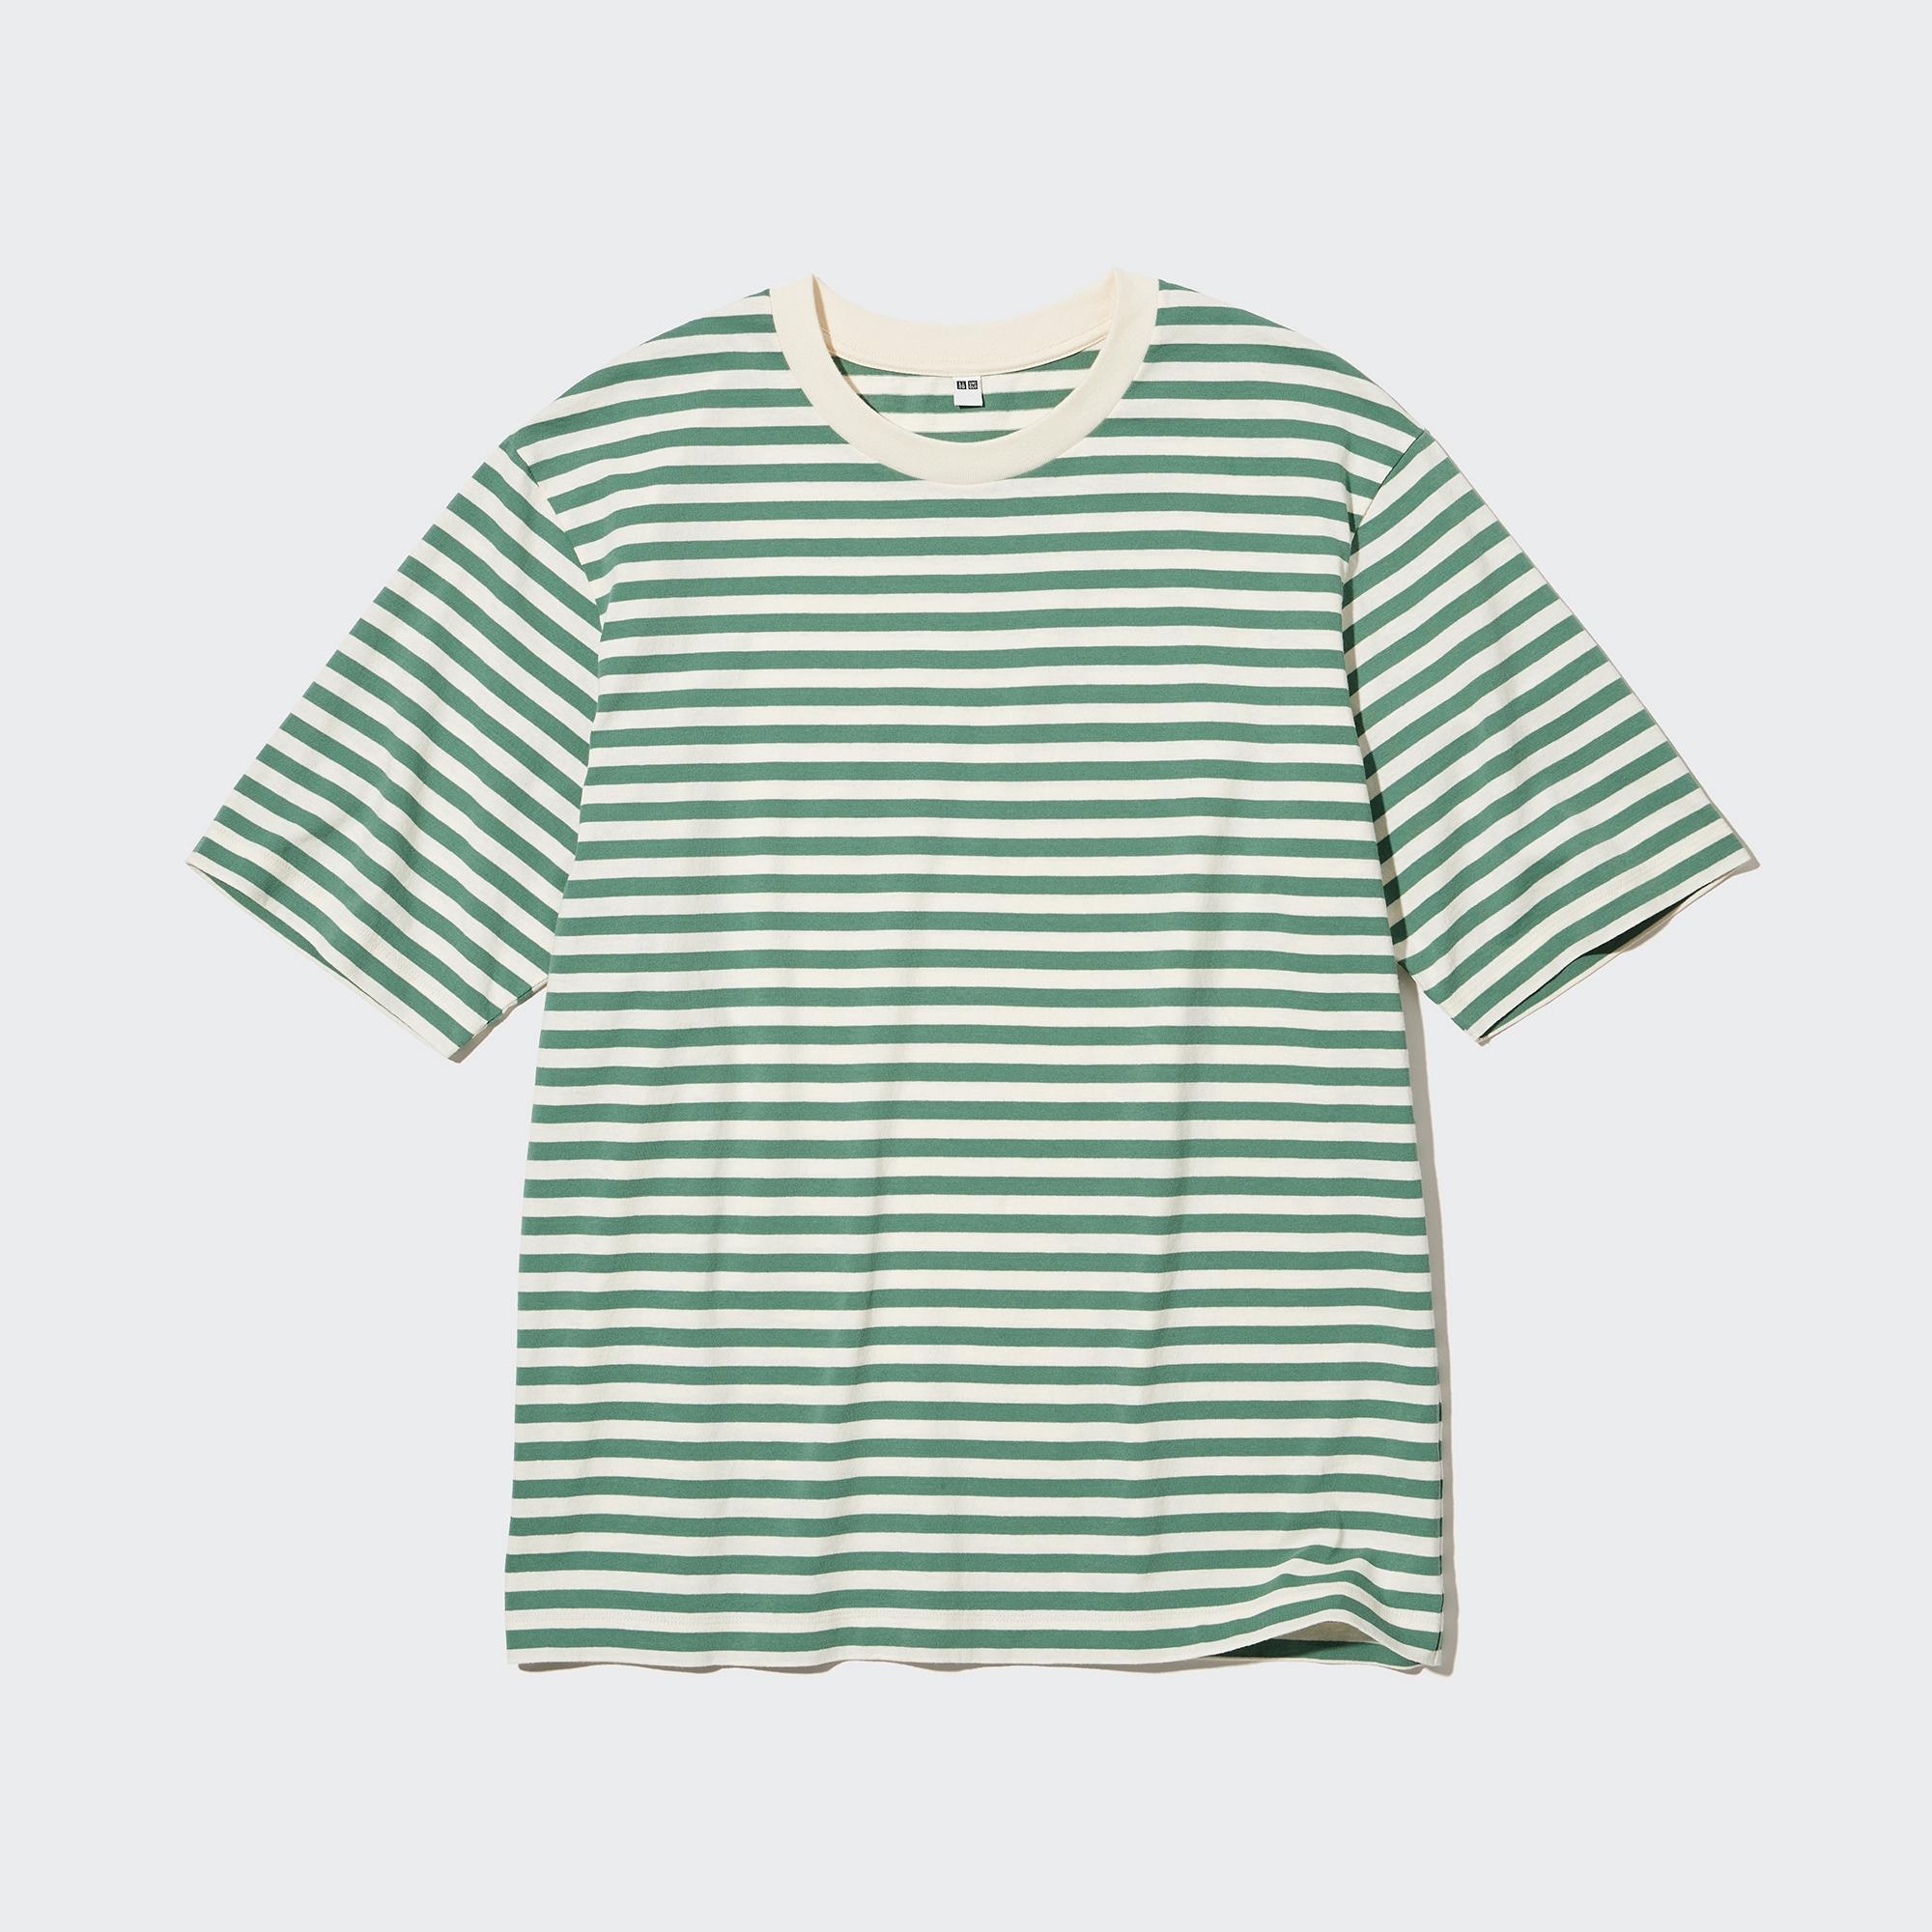 ユニクロ ボーダー 半袖 トップス Tシャツ フレンチスリーブ Tシャツ/カットソー(半袖/袖なし) 品質は非常に良い